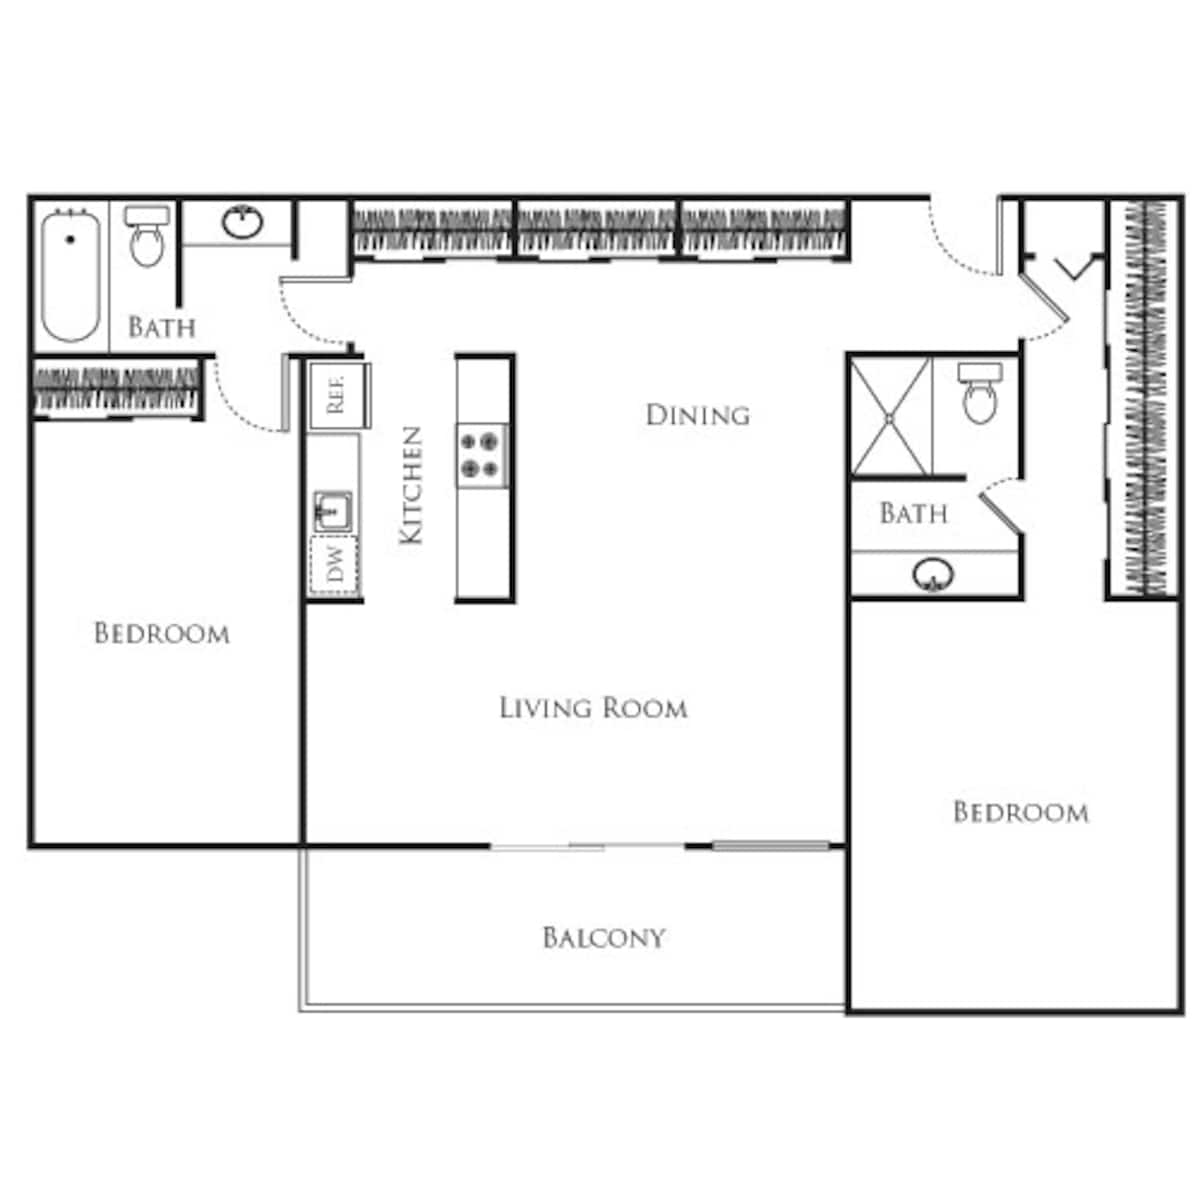 Floorplan diagram for 2 Bedroom D, showing 2 bedroom